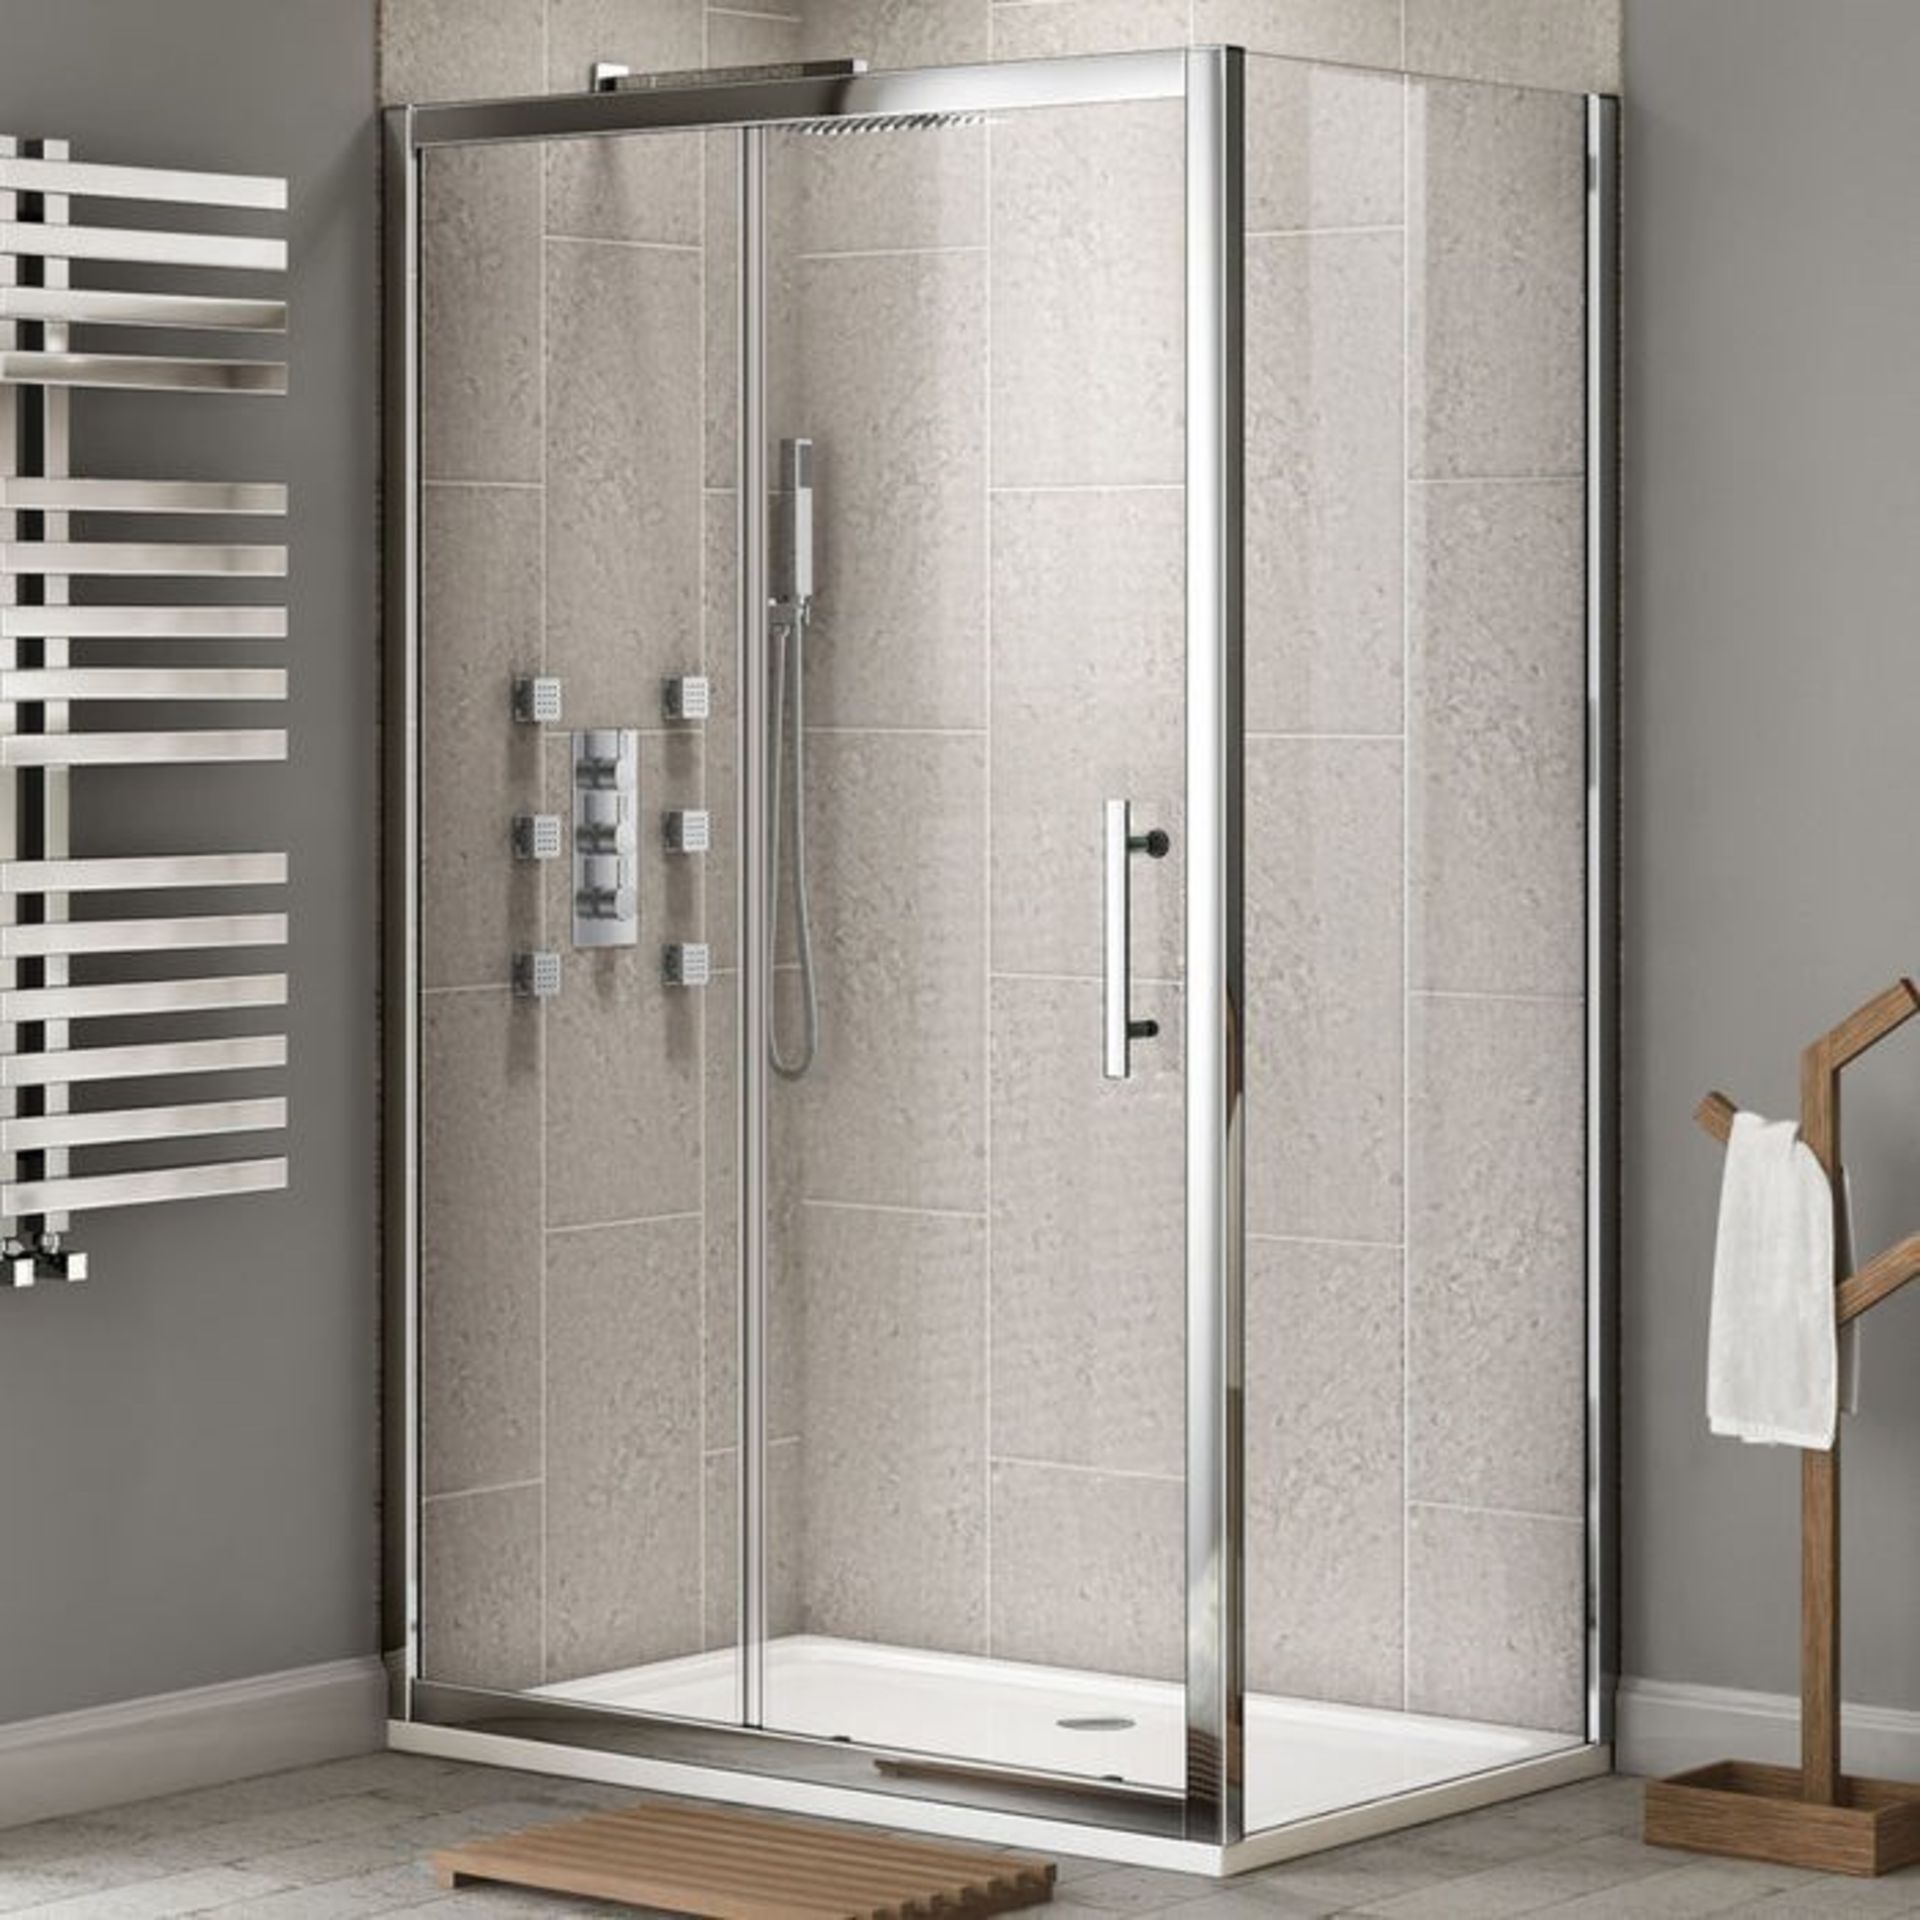 Twyfords 1700x900mm - Premium EasyClean Sliding Door Shower Enclosure. RRP £549.99.8mm EasyCle...